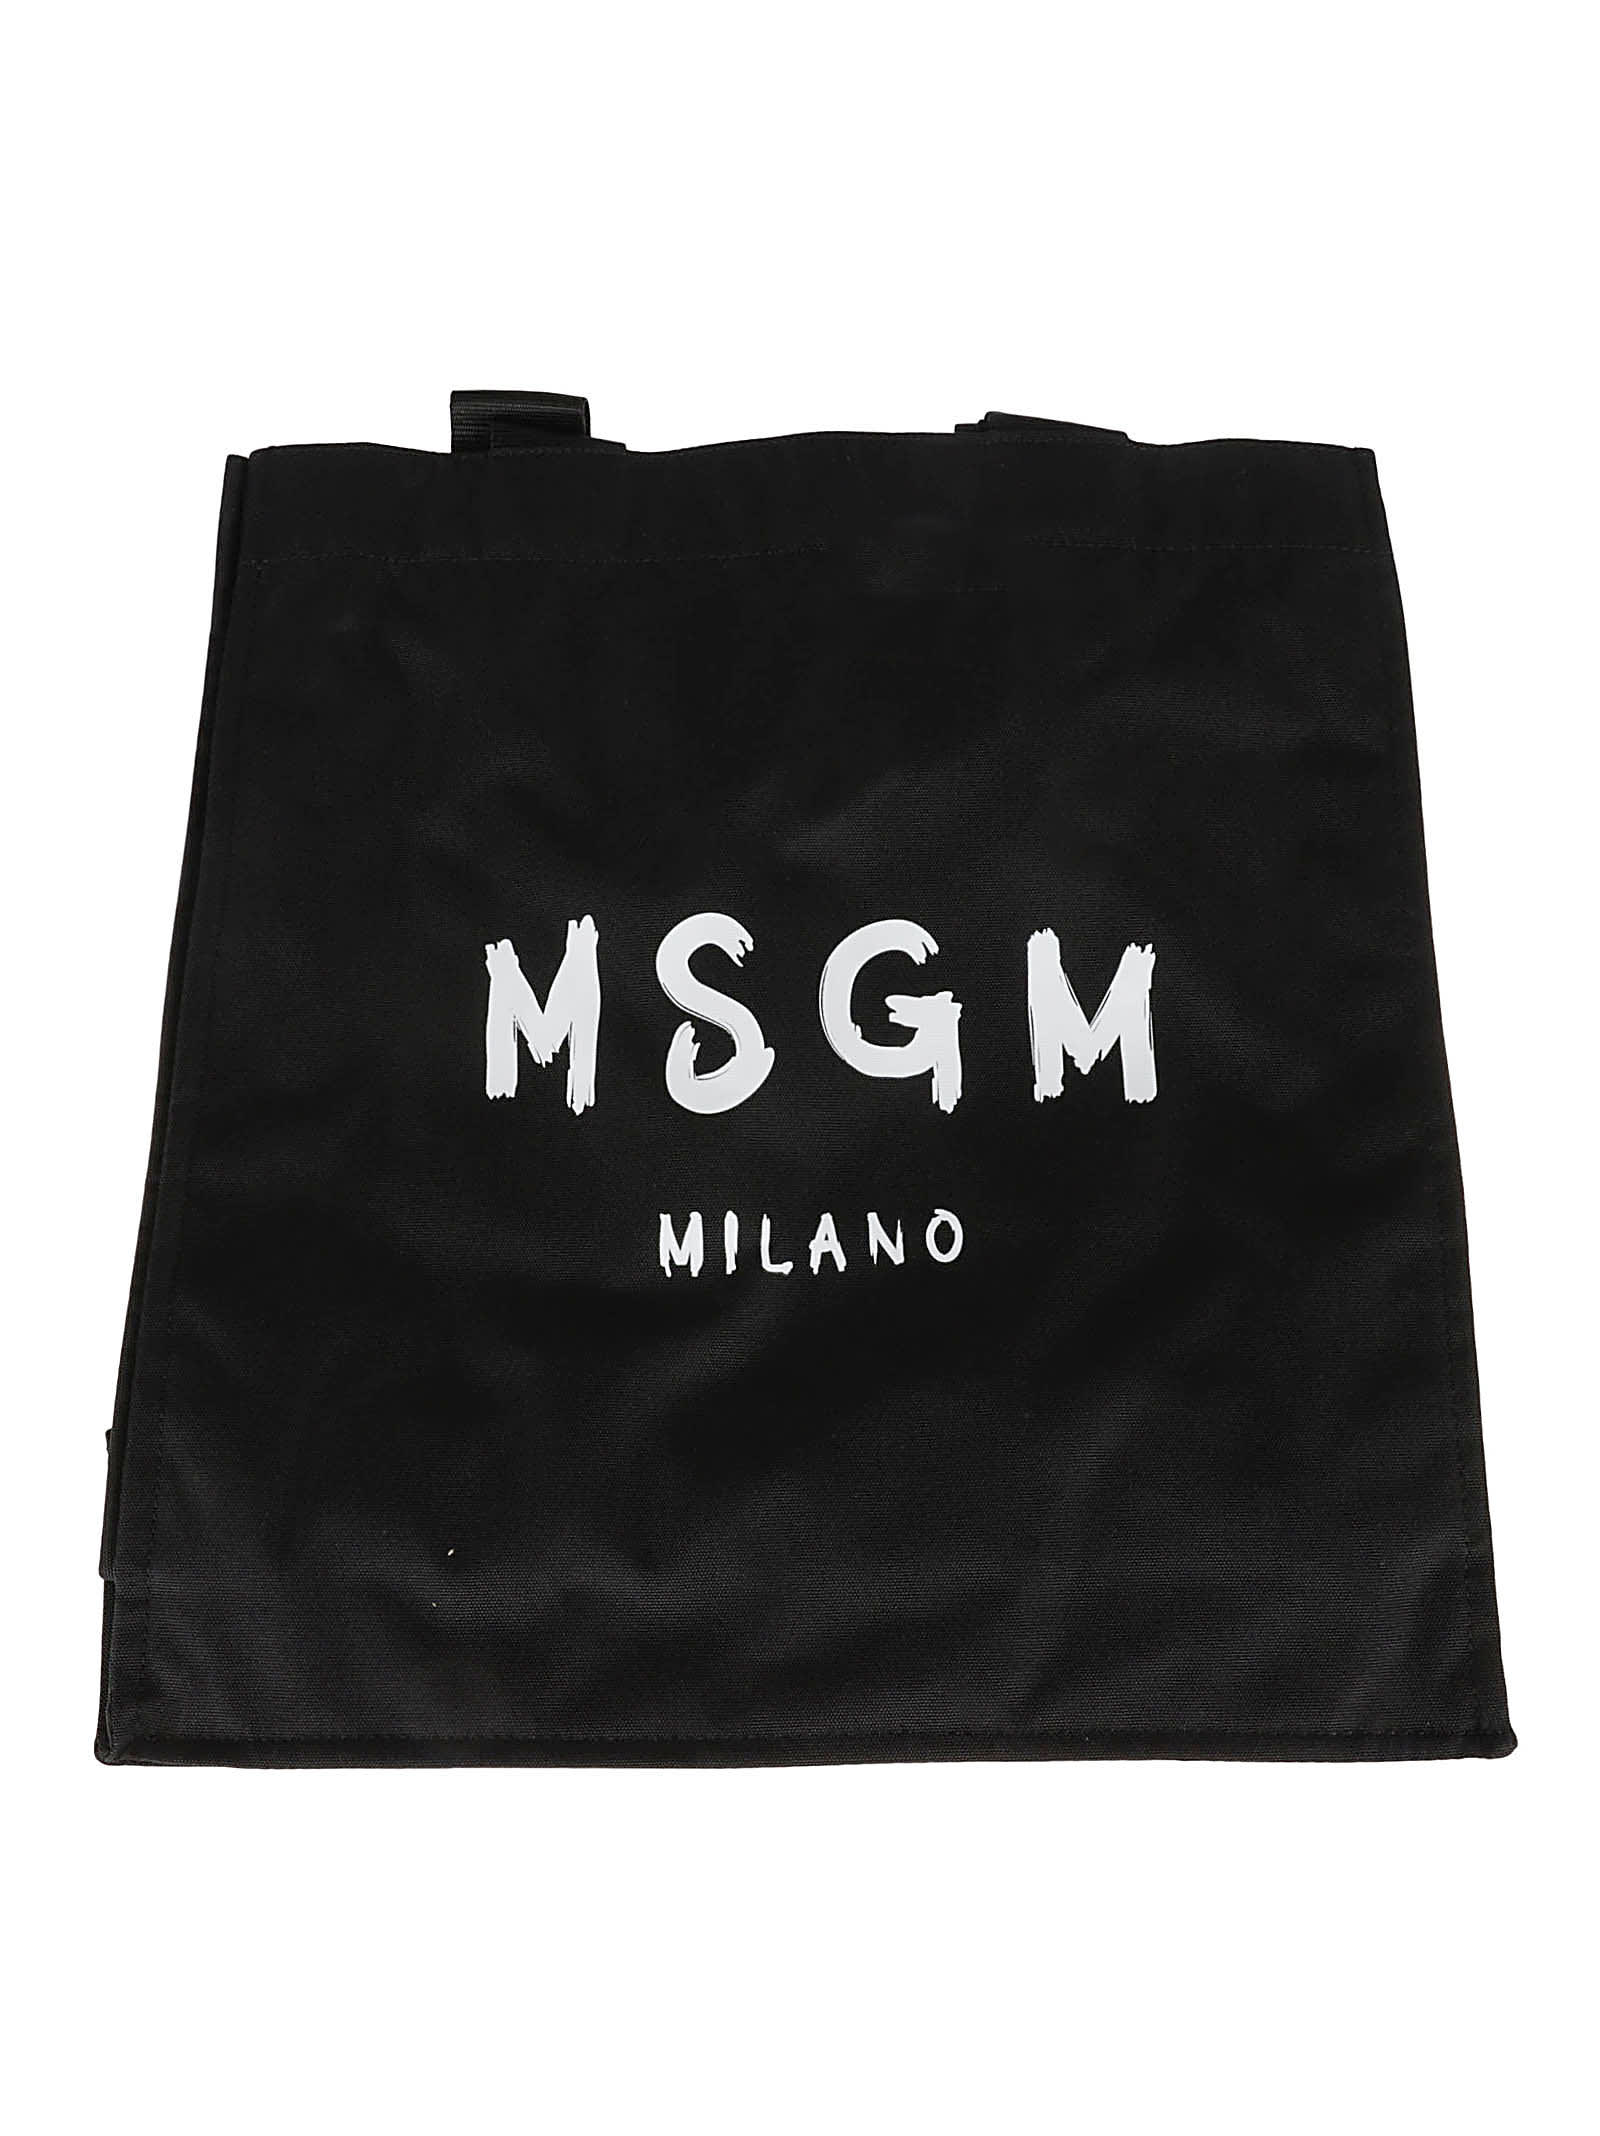 Msgm Milano Tote In Black